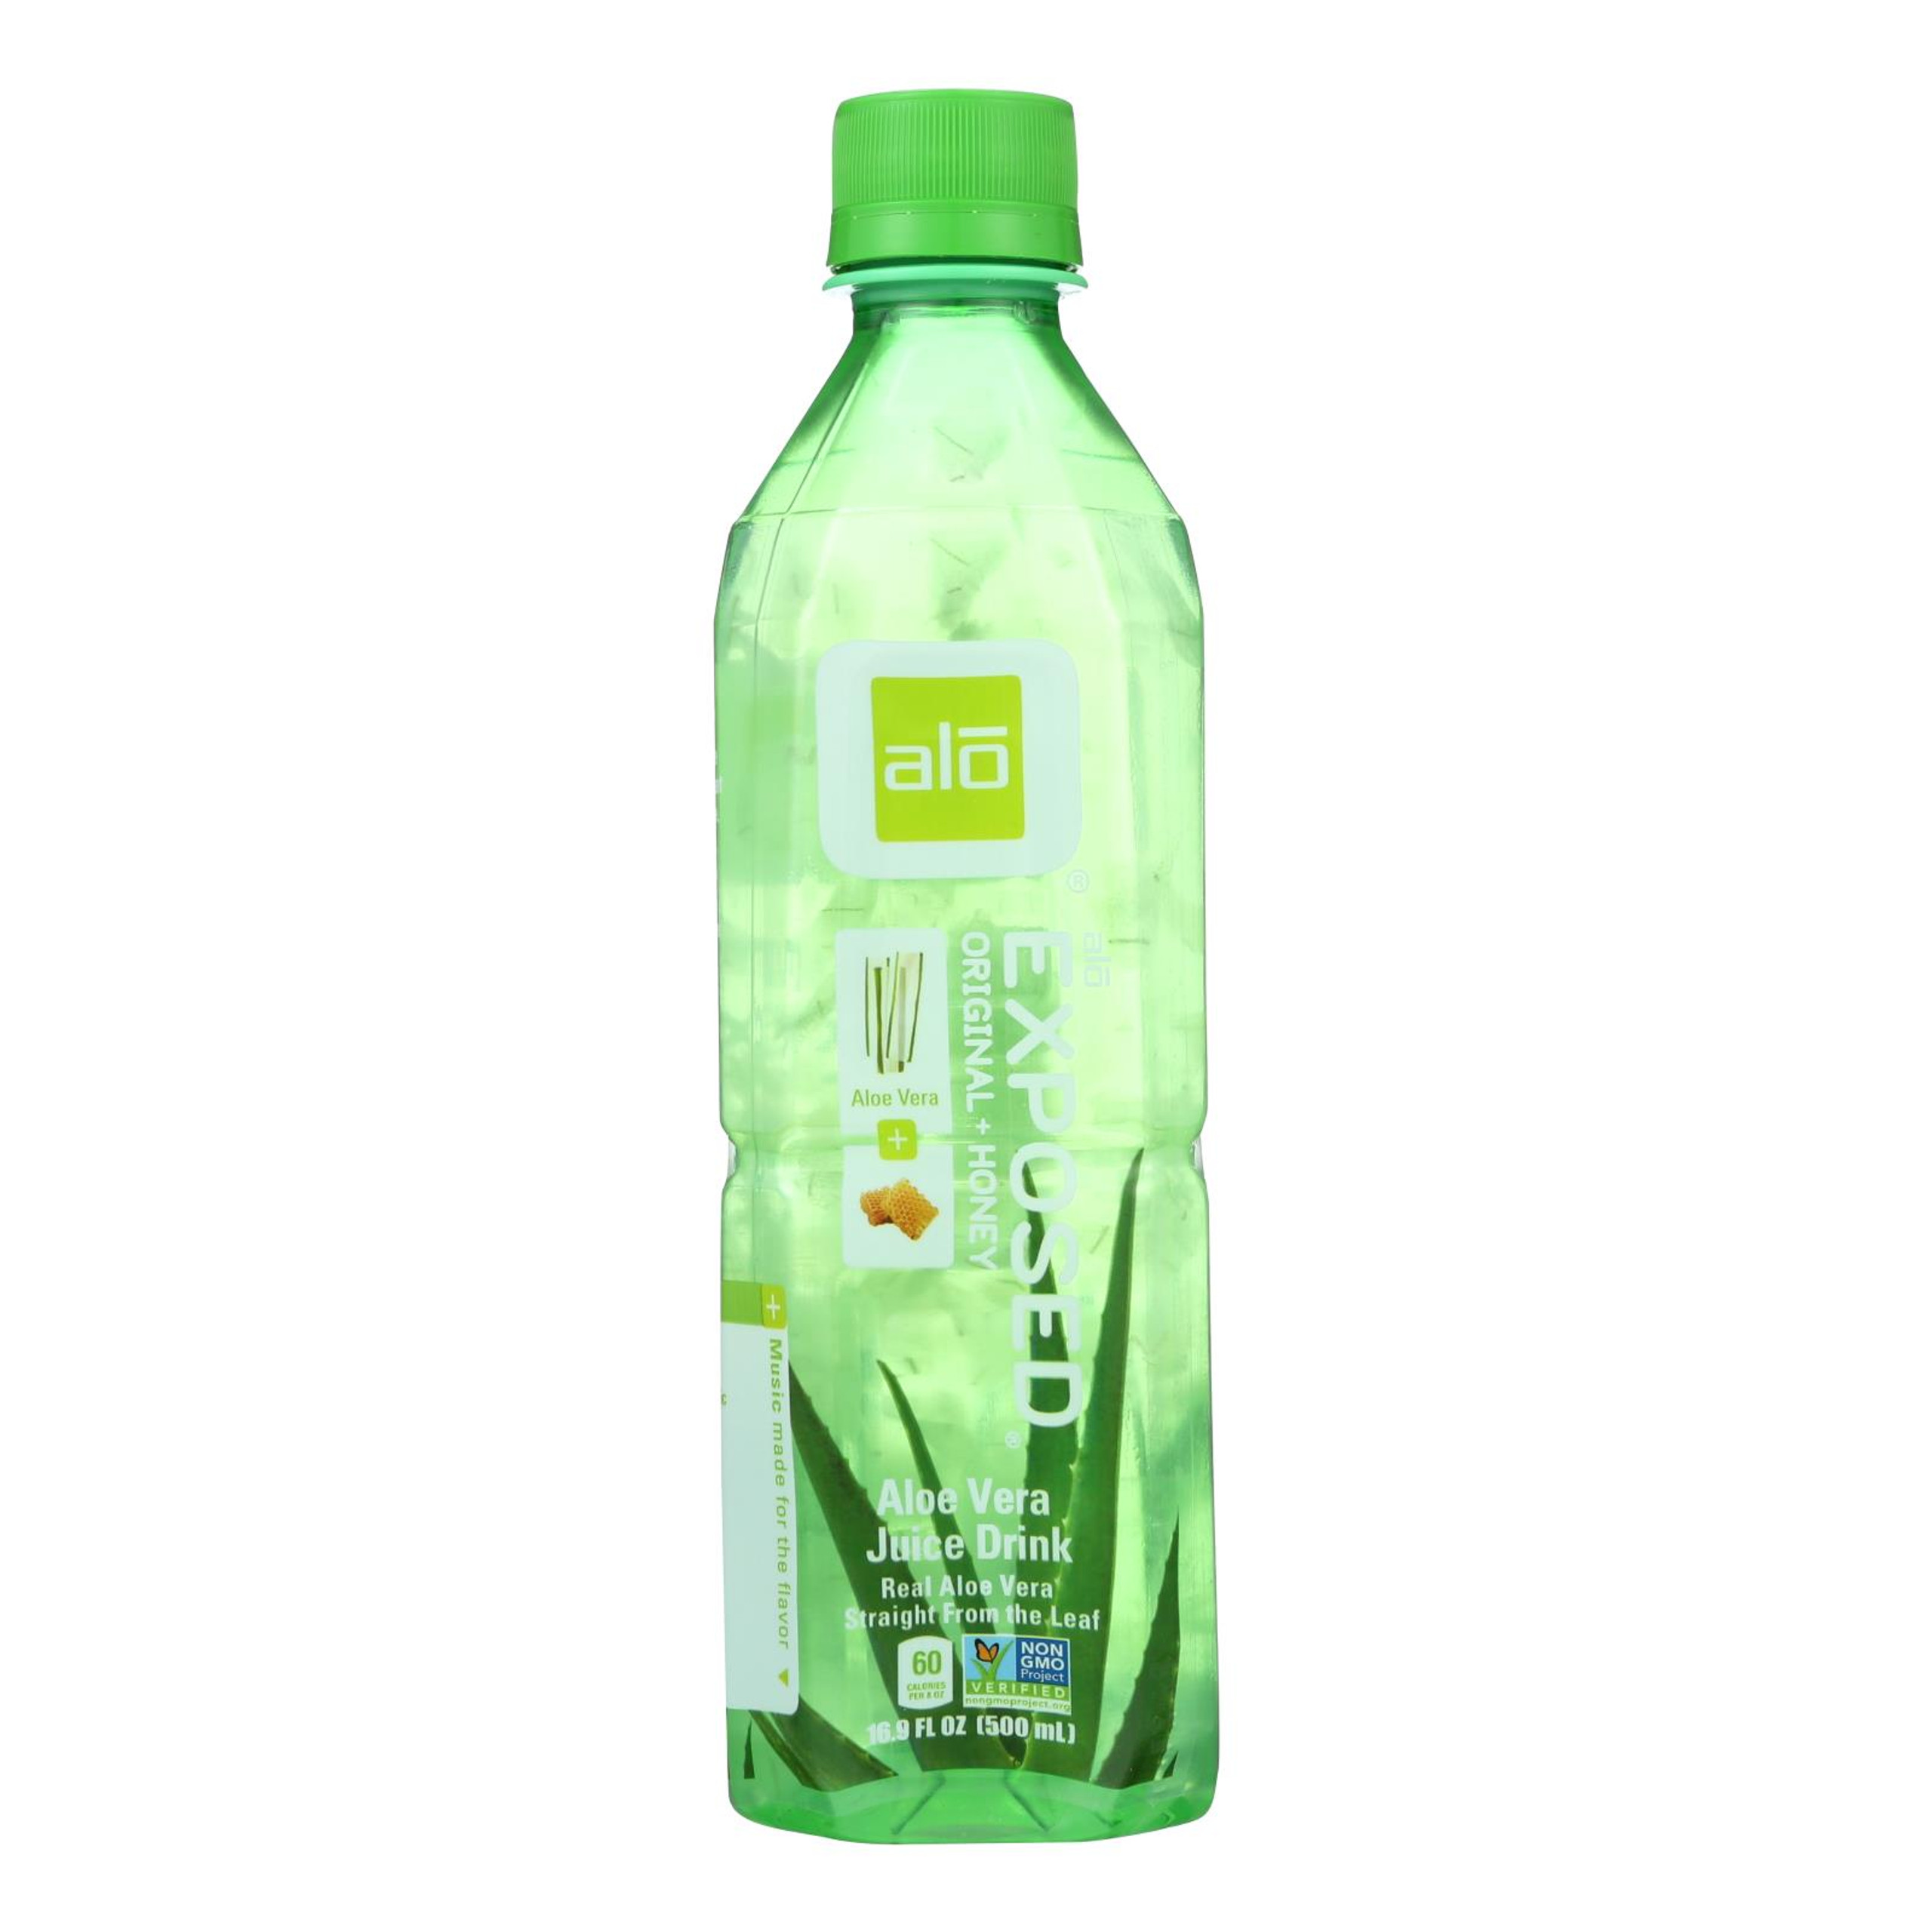 Alo Original Crisp Aloe Vera Juice Drink Fuji Apple And Pear Case Of 12 169 Fl Oz 0643